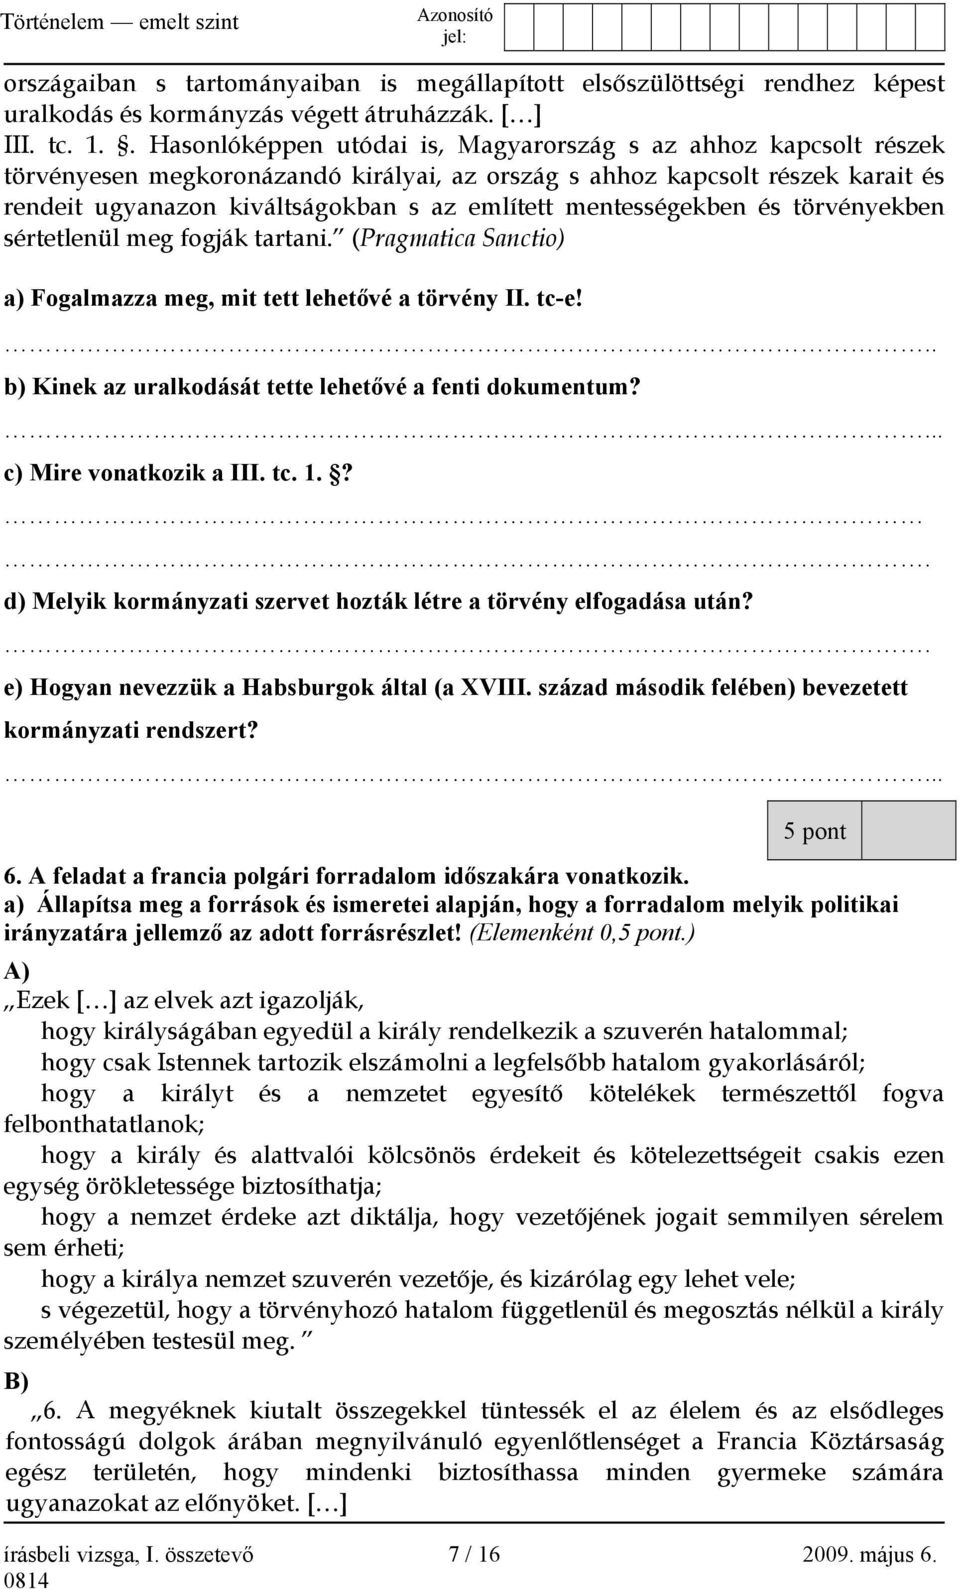 EMELT SZINTŰ ÍRÁSBELI VIZSGA - PDF Ingyenes letöltés